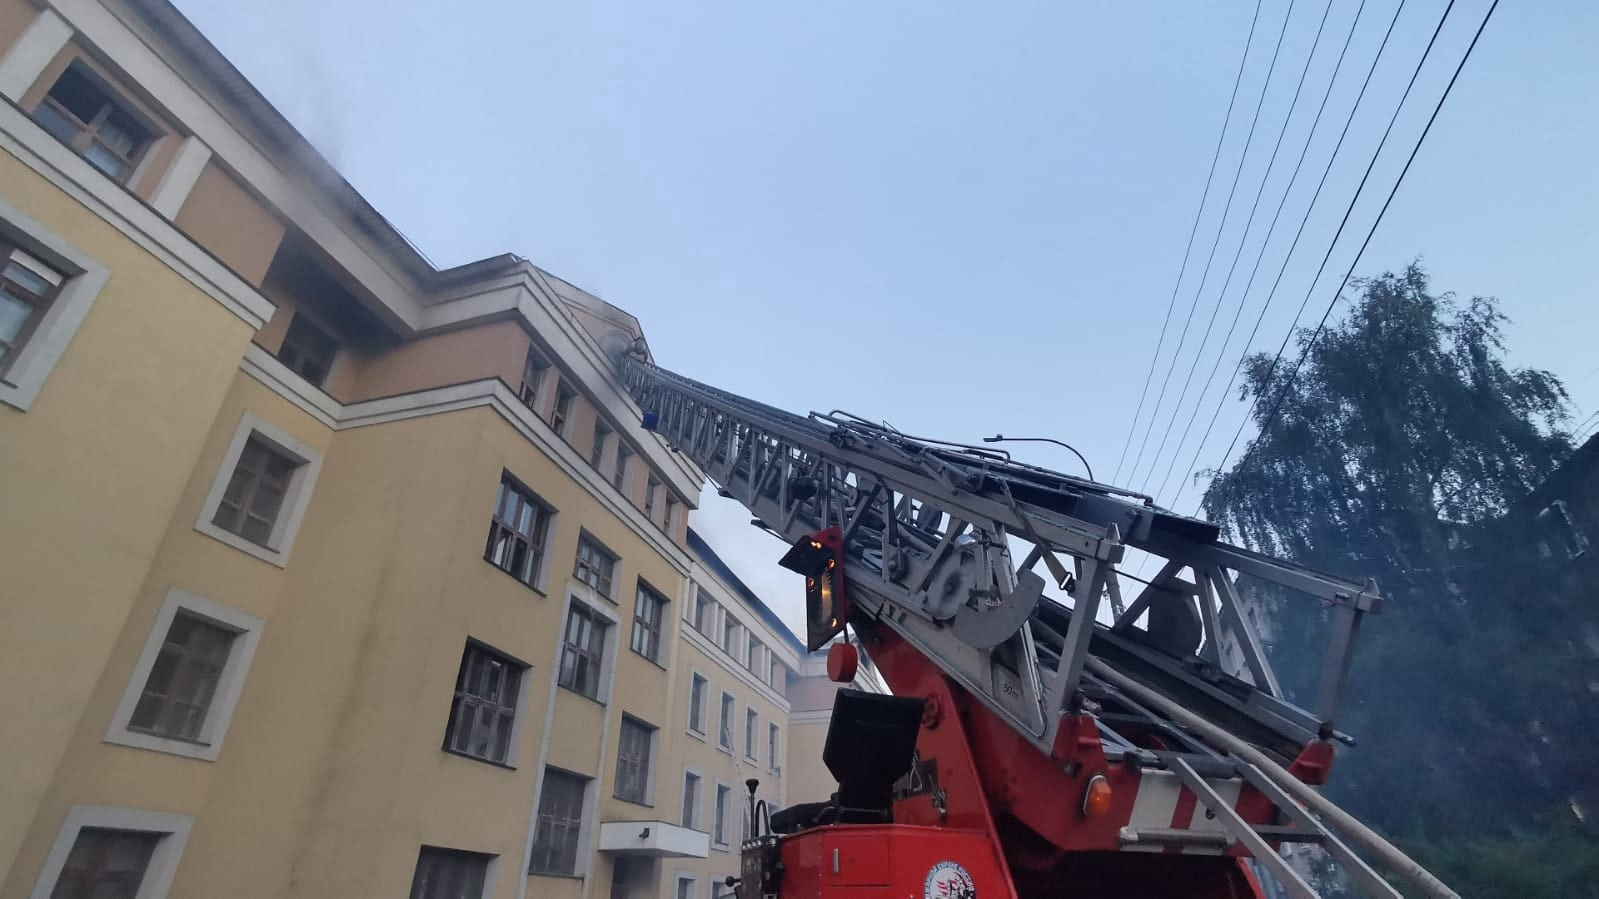 Семь человек пострадали на пожаре в общежитии медицинского университета в Нижнем Новгороде